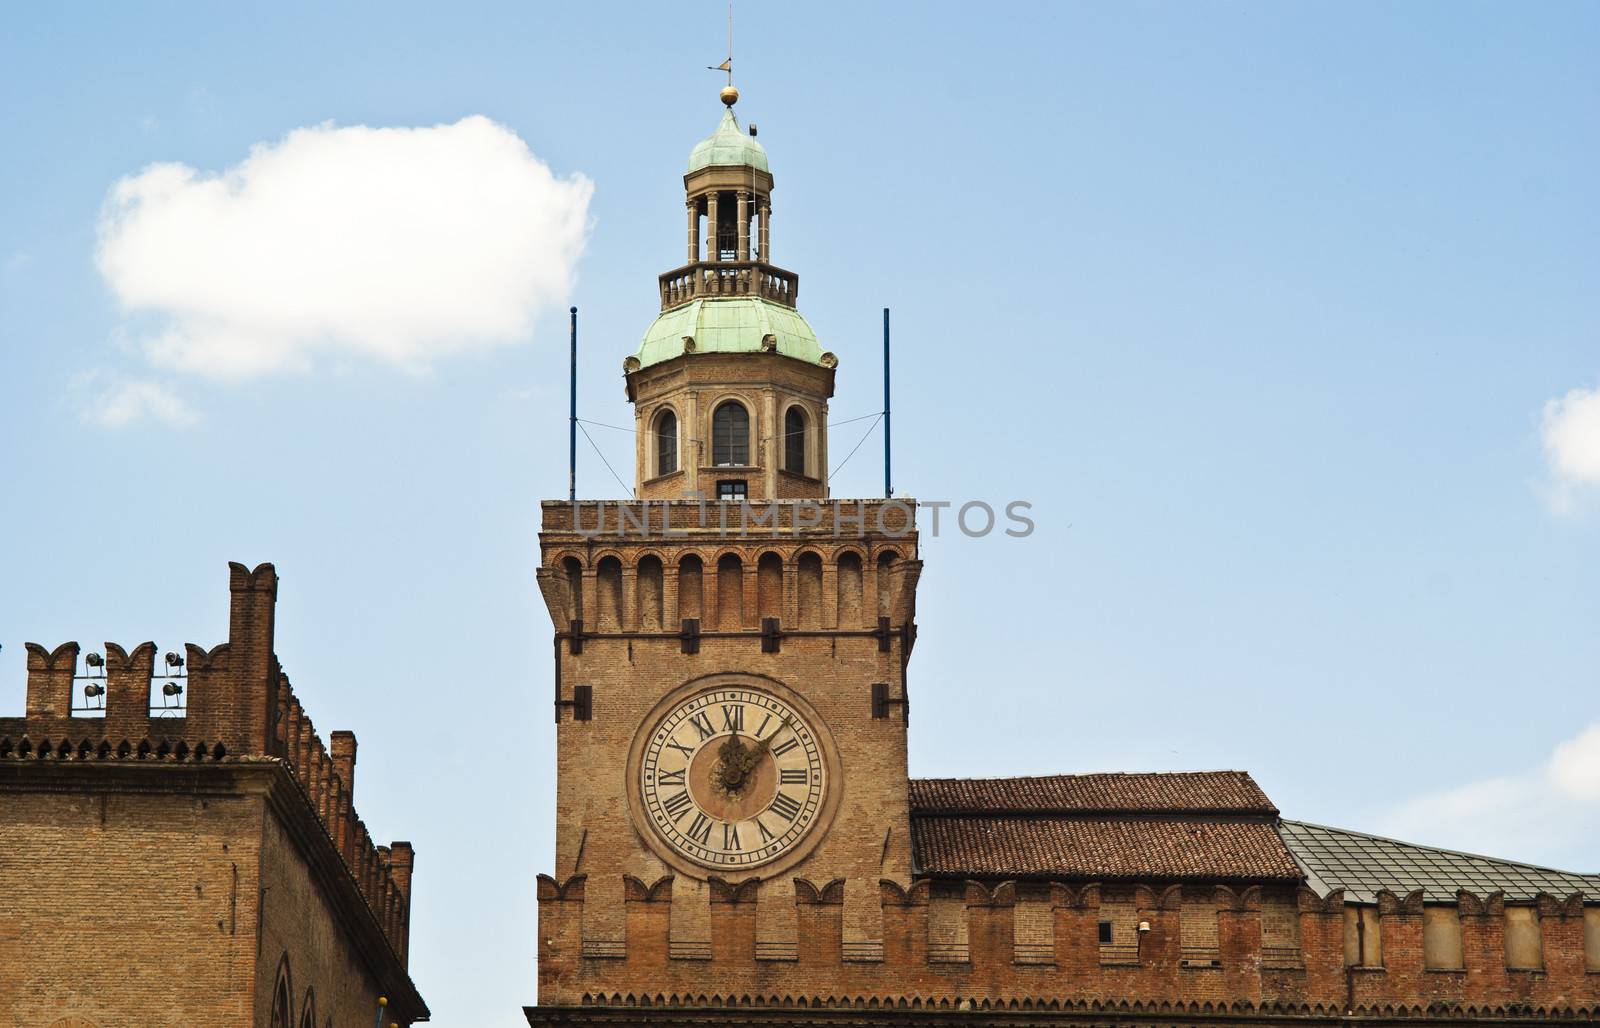 Cityscape of Bologna, Piazza Maggiore by gandolfocannatella